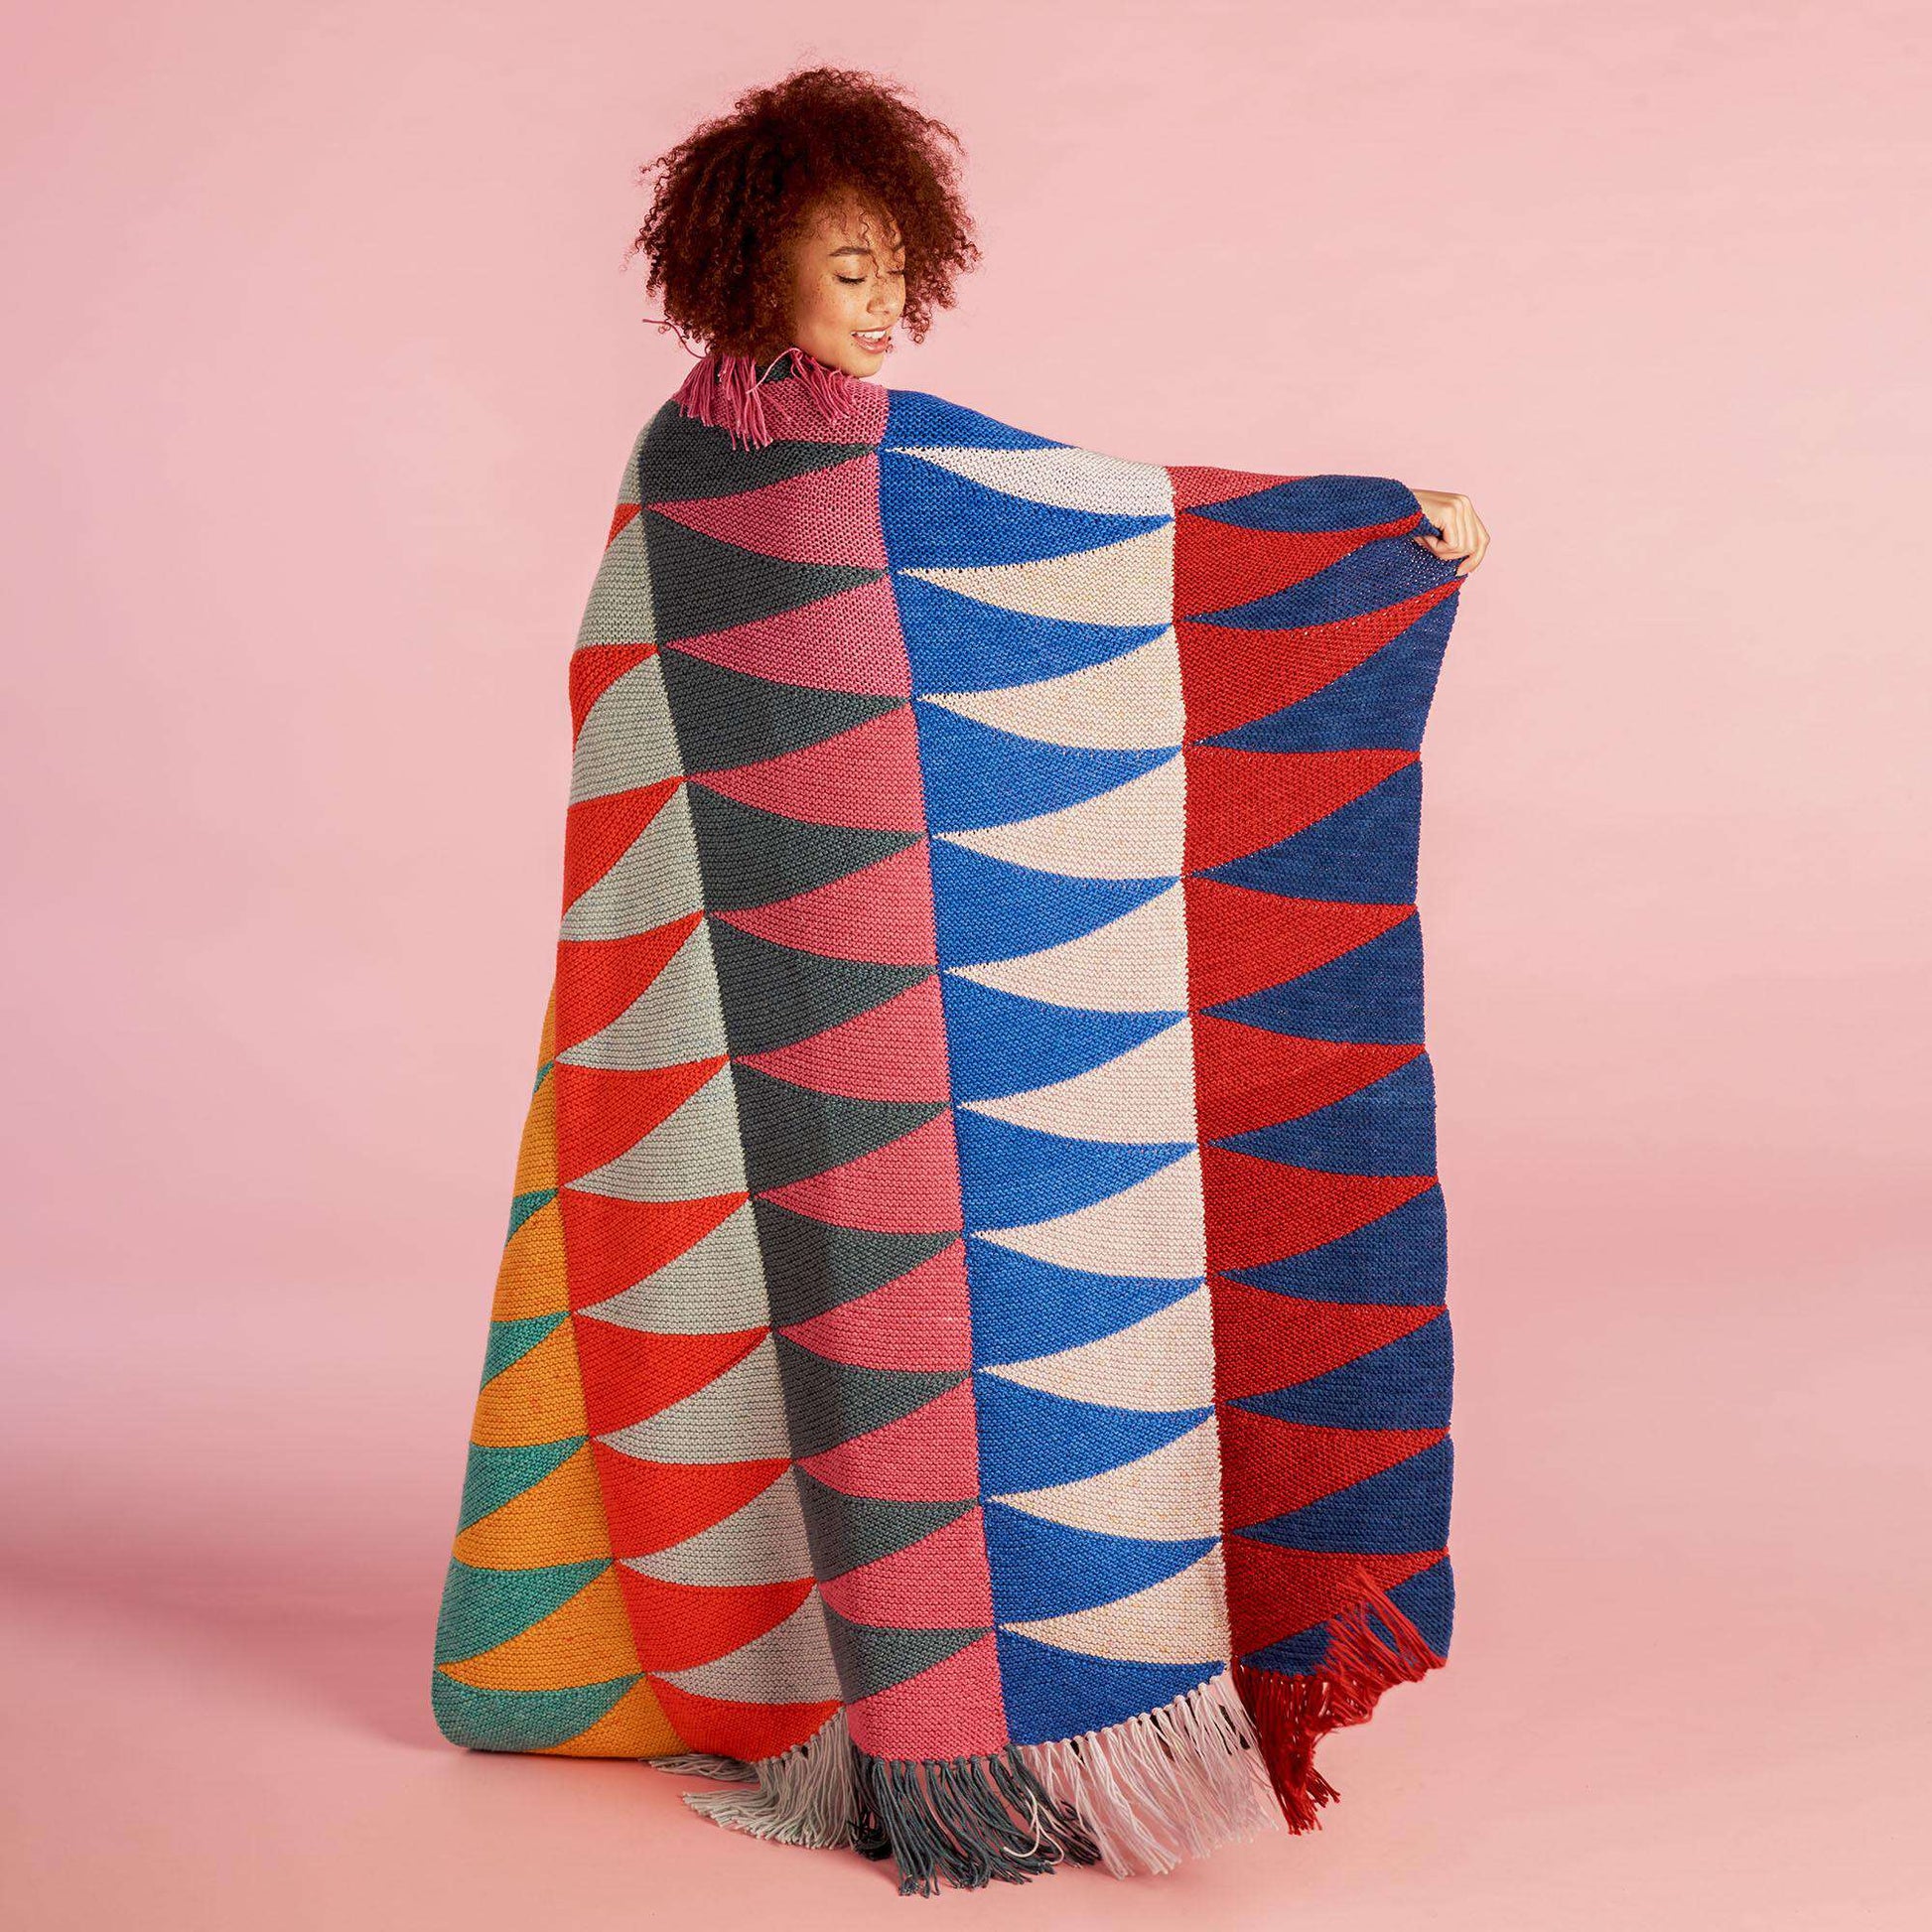 Free Caron Knit Sawtooth Panels Blanket Pattern